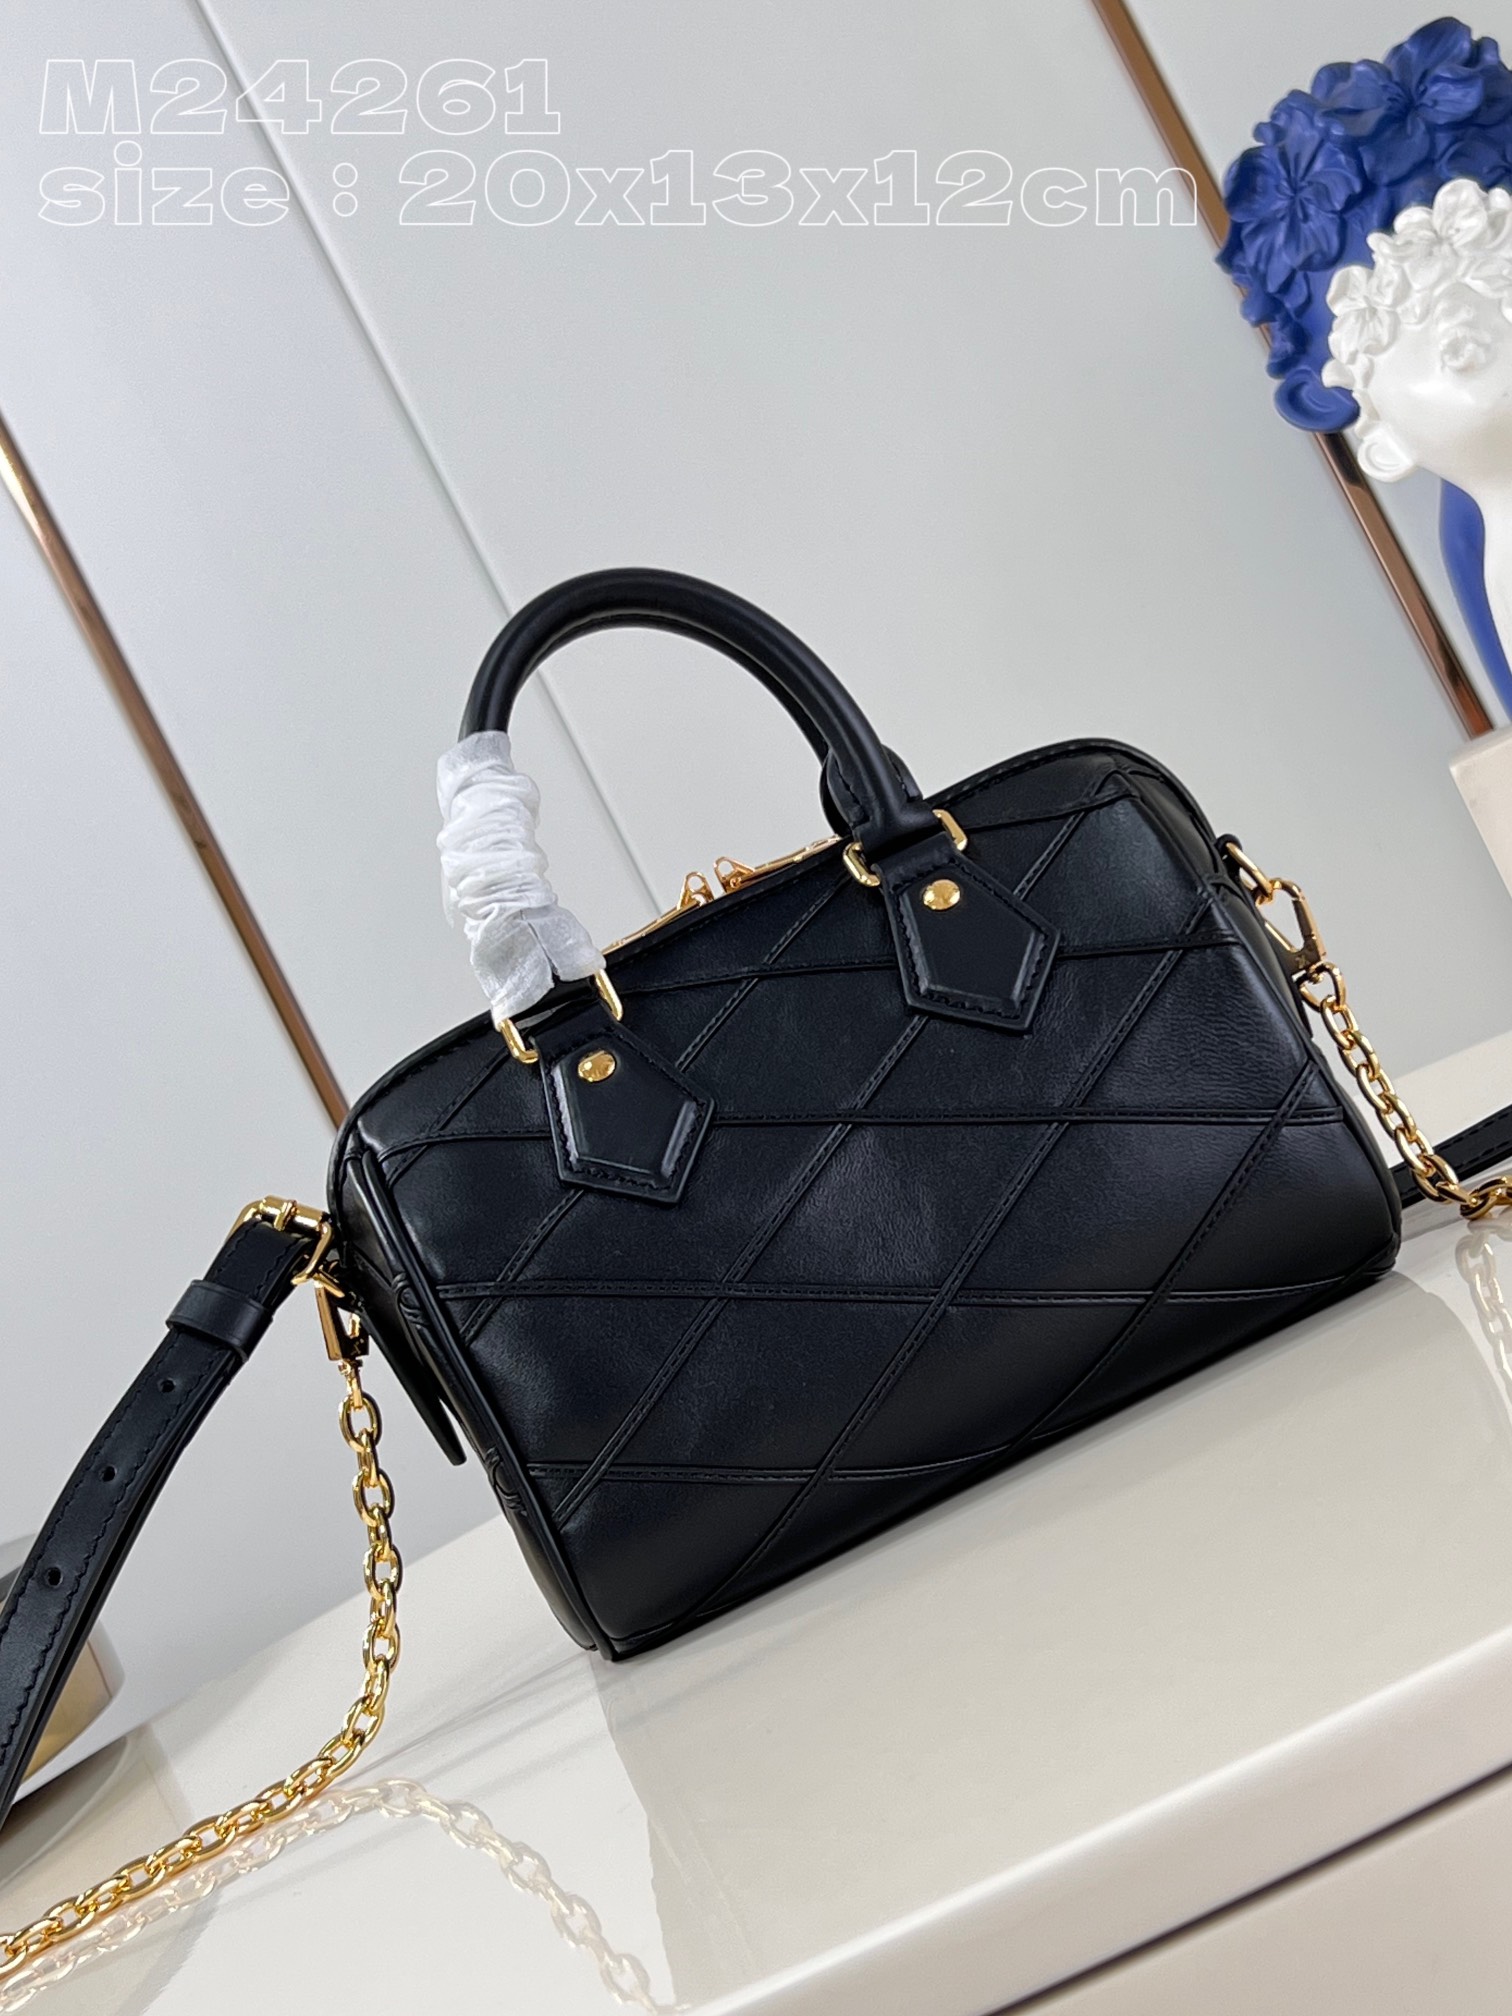 Louis Vuitton LV Speedy Bags Handbags Black Sheepskin Chains M24261